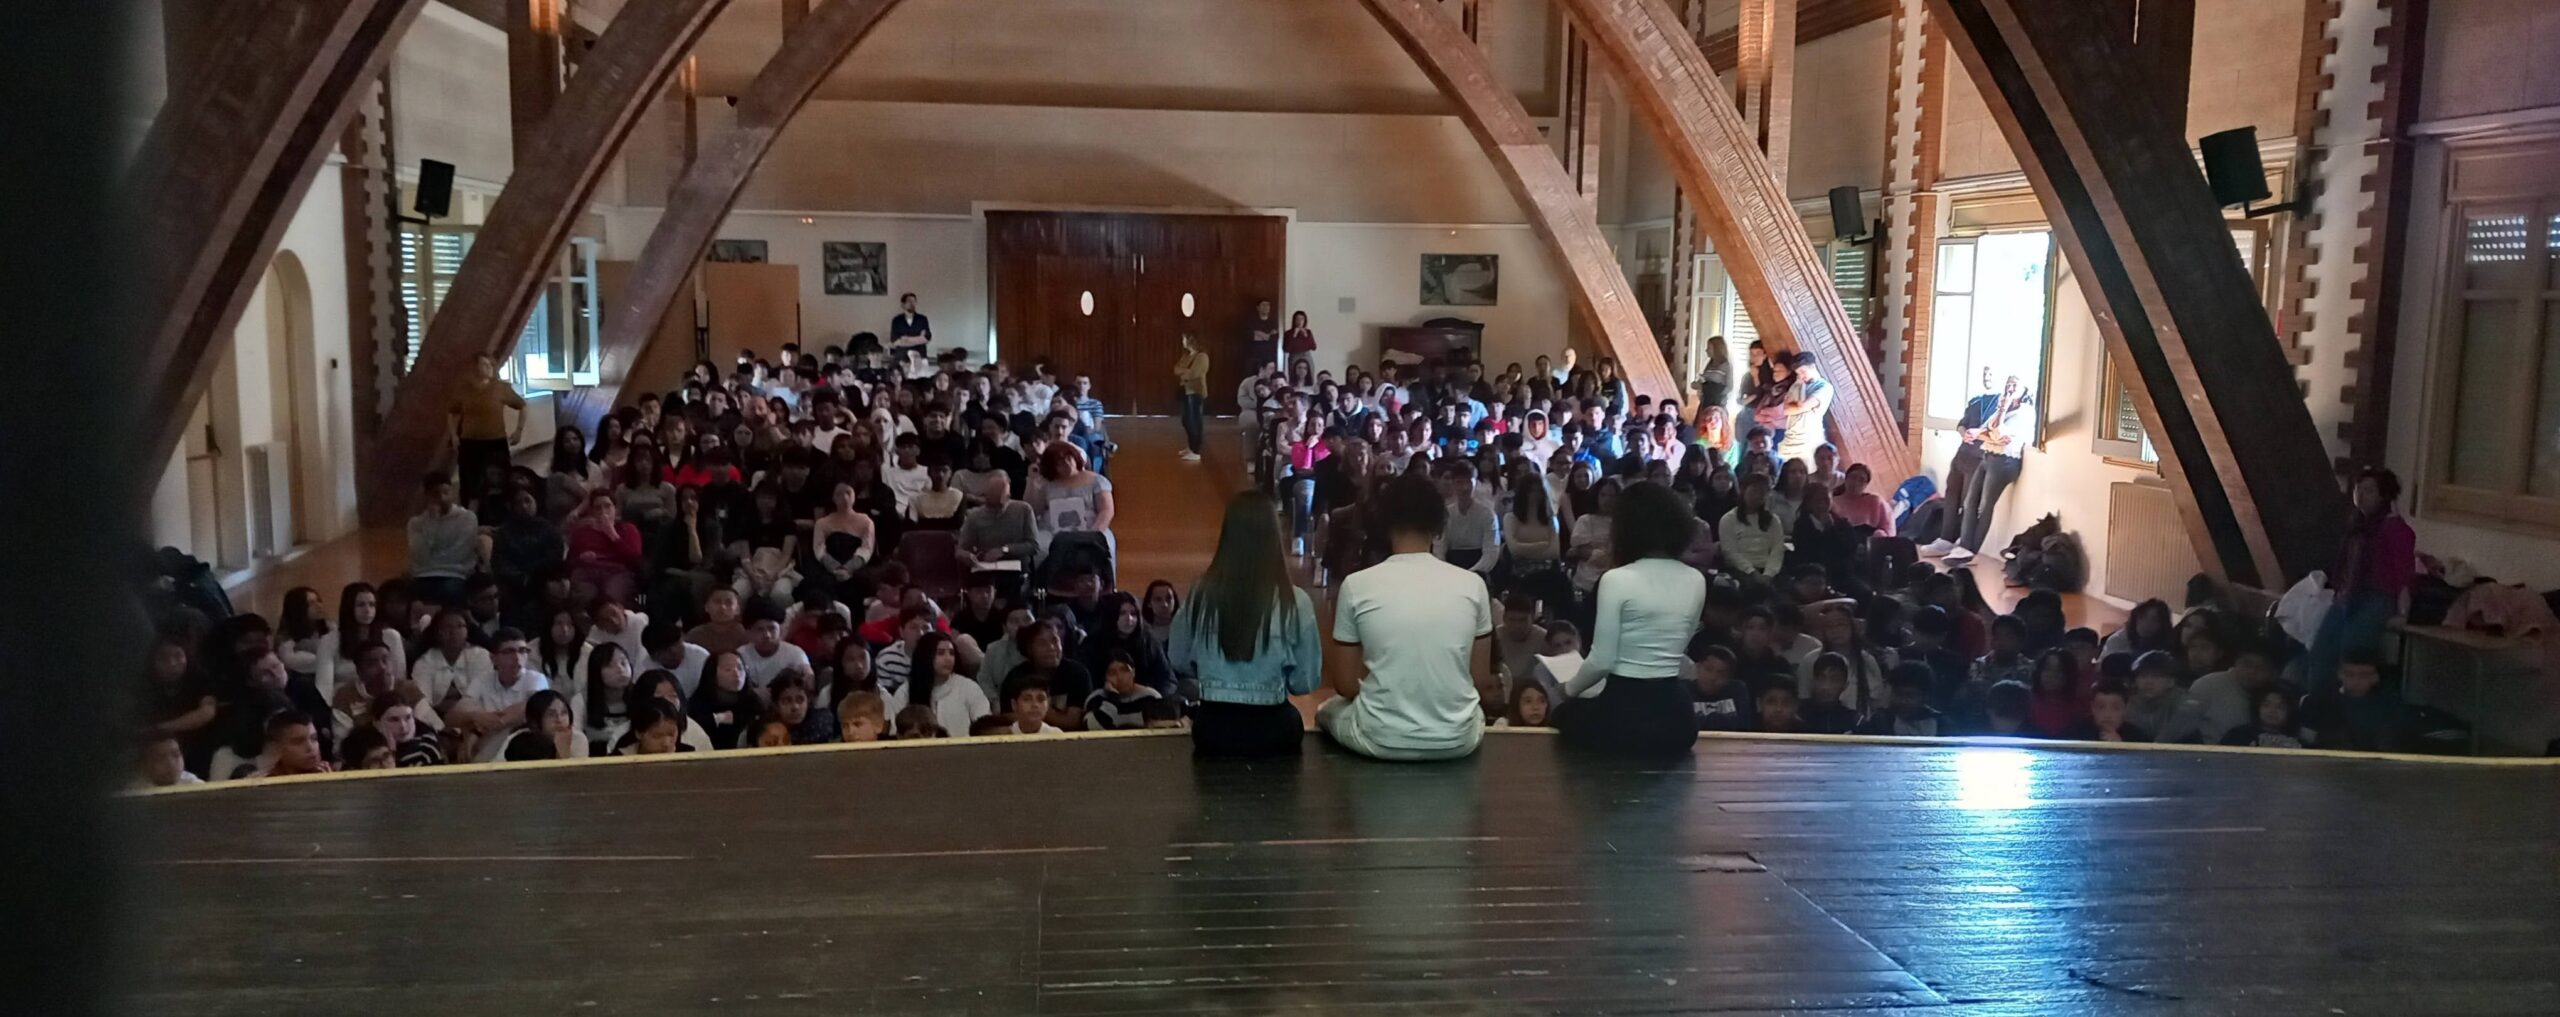 Sala d'actes de l'escola Cavall Bernat, plena d'alumnes. Els tres presentadors de l'acte, asseguts a la punta de l'escenari, adreçant-se al públic.